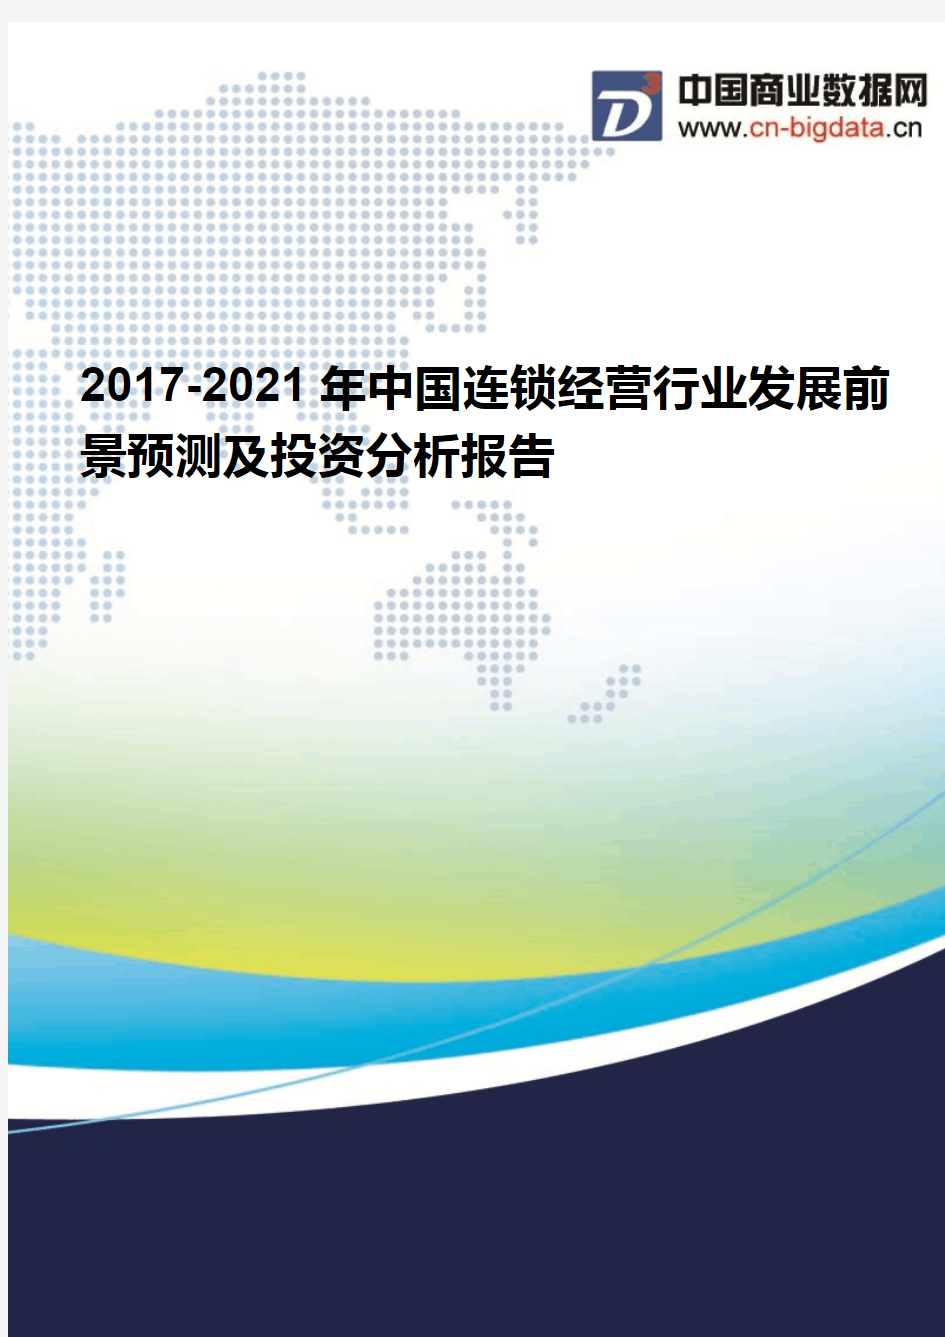 2017-2021年中国连锁经营行业发展前景预测及投资分析报告